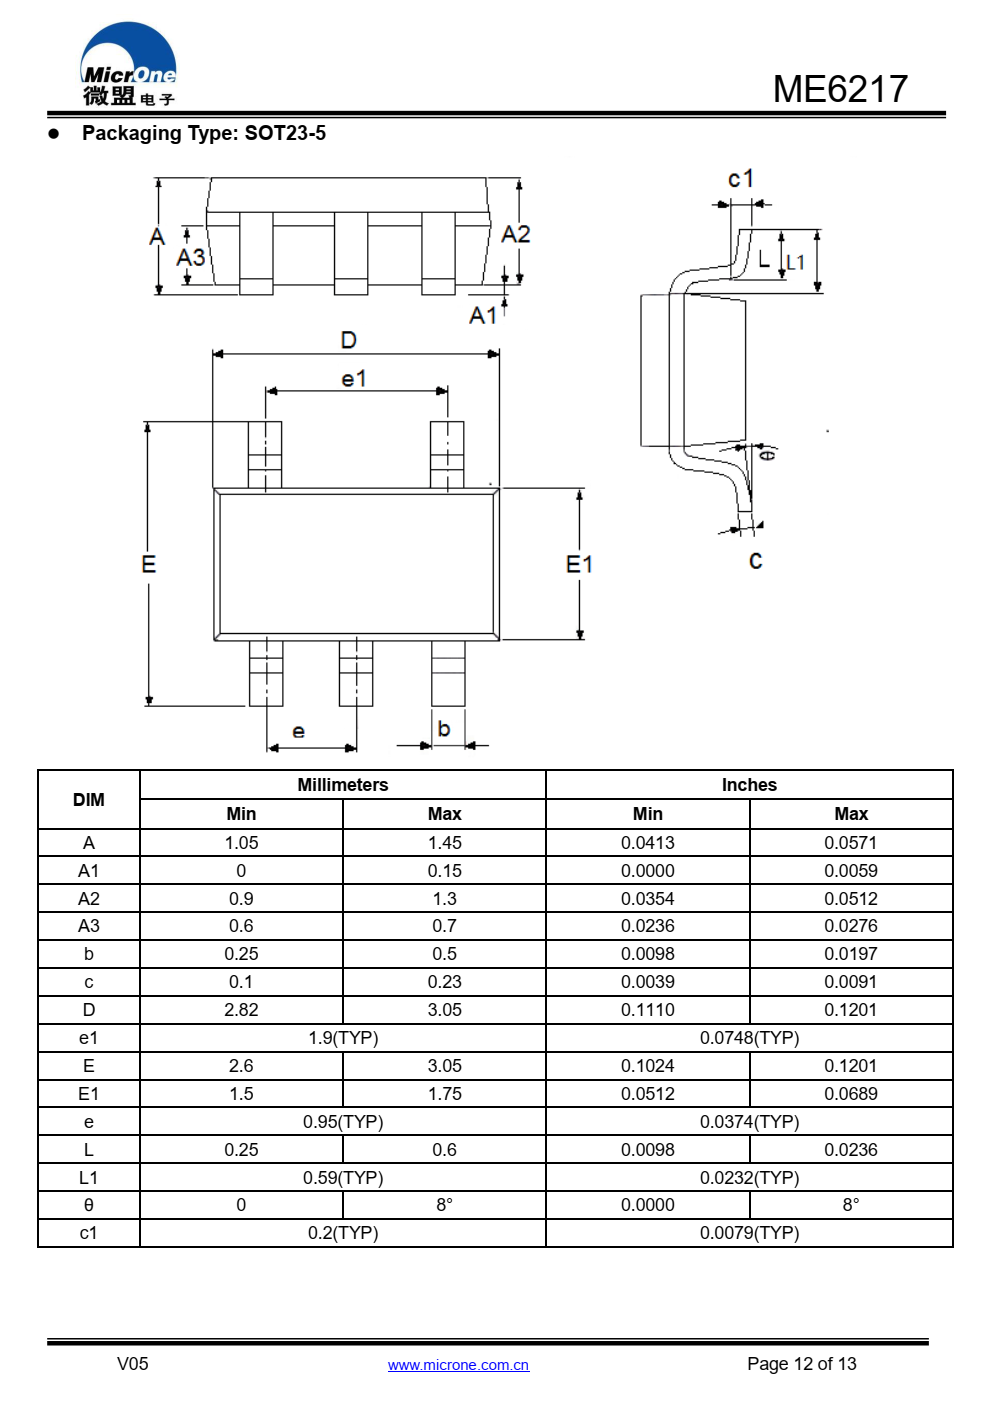 ME6217系列是一种正电压调节器  具有低压差、高输出电压  准确度高，低成本，基于  CMOS工艺研究